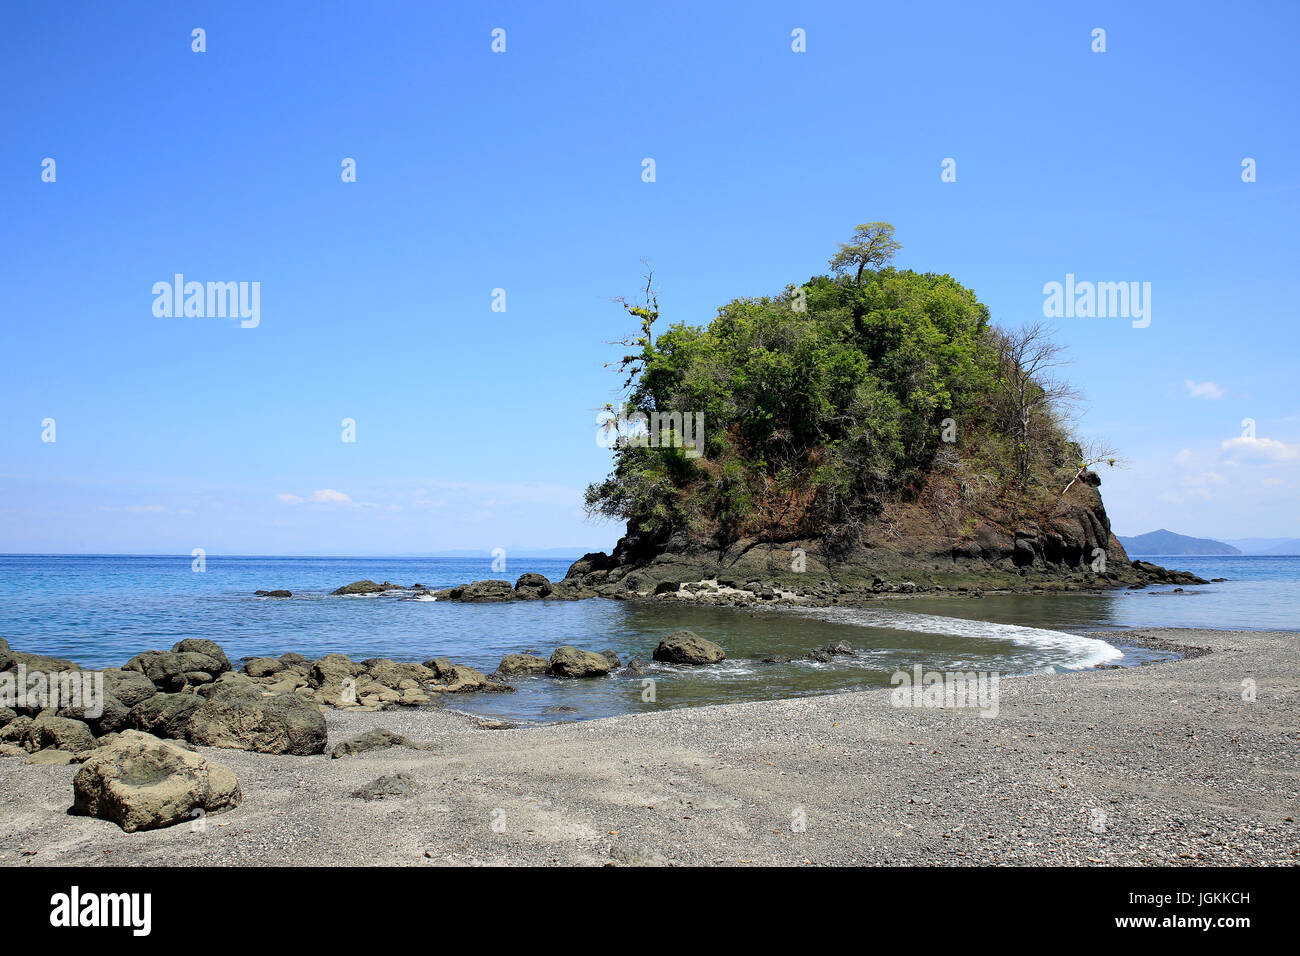 Stone Beach in Coiba National Park, Panama Stock Photo